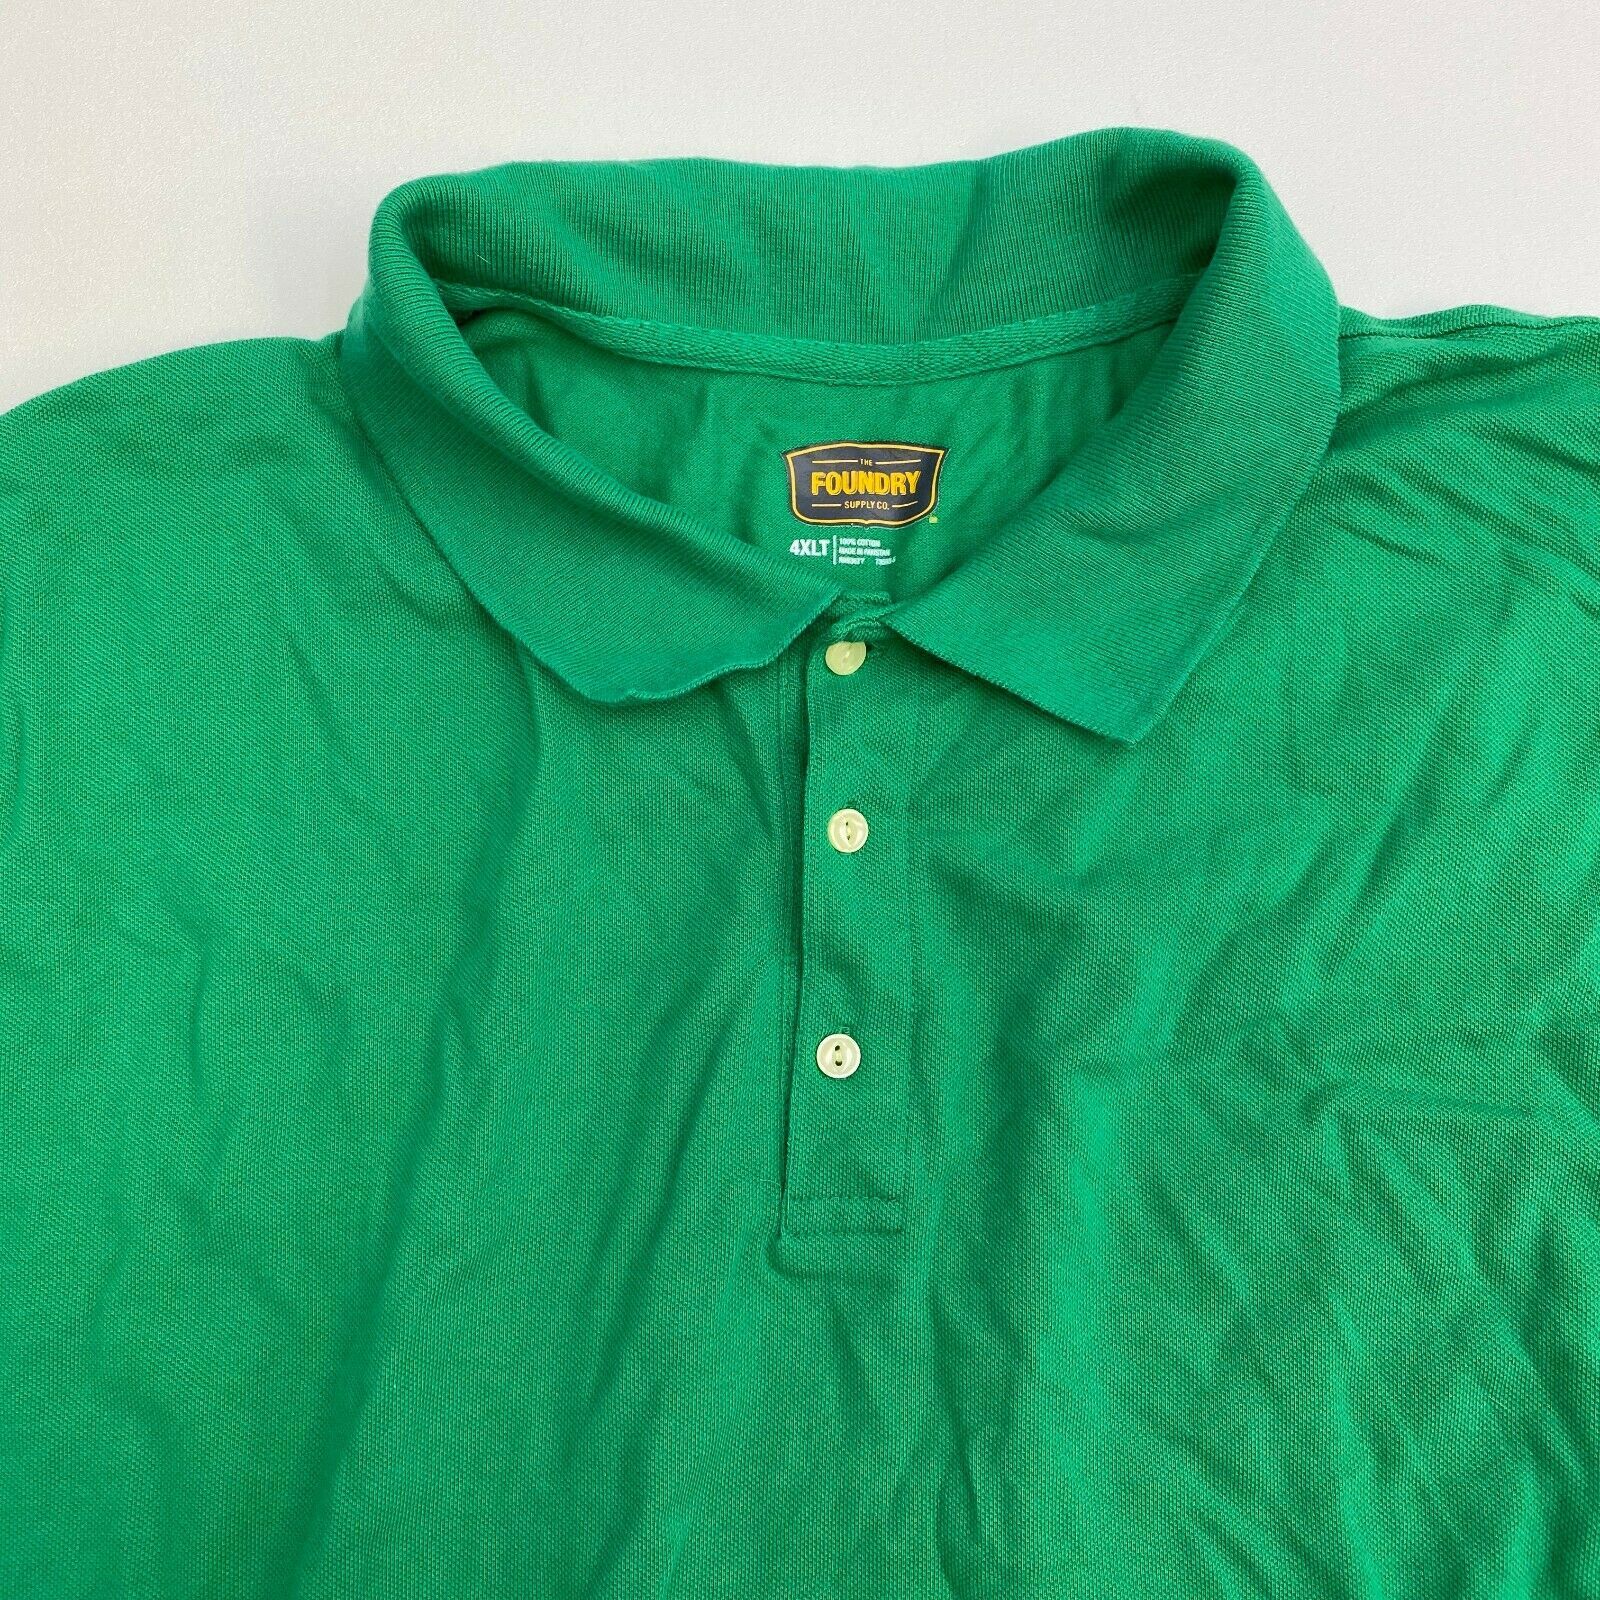 The Foundry Polo Shirt Mens 4XLT Green Short Sleeve Casual XXXXLT - Polos